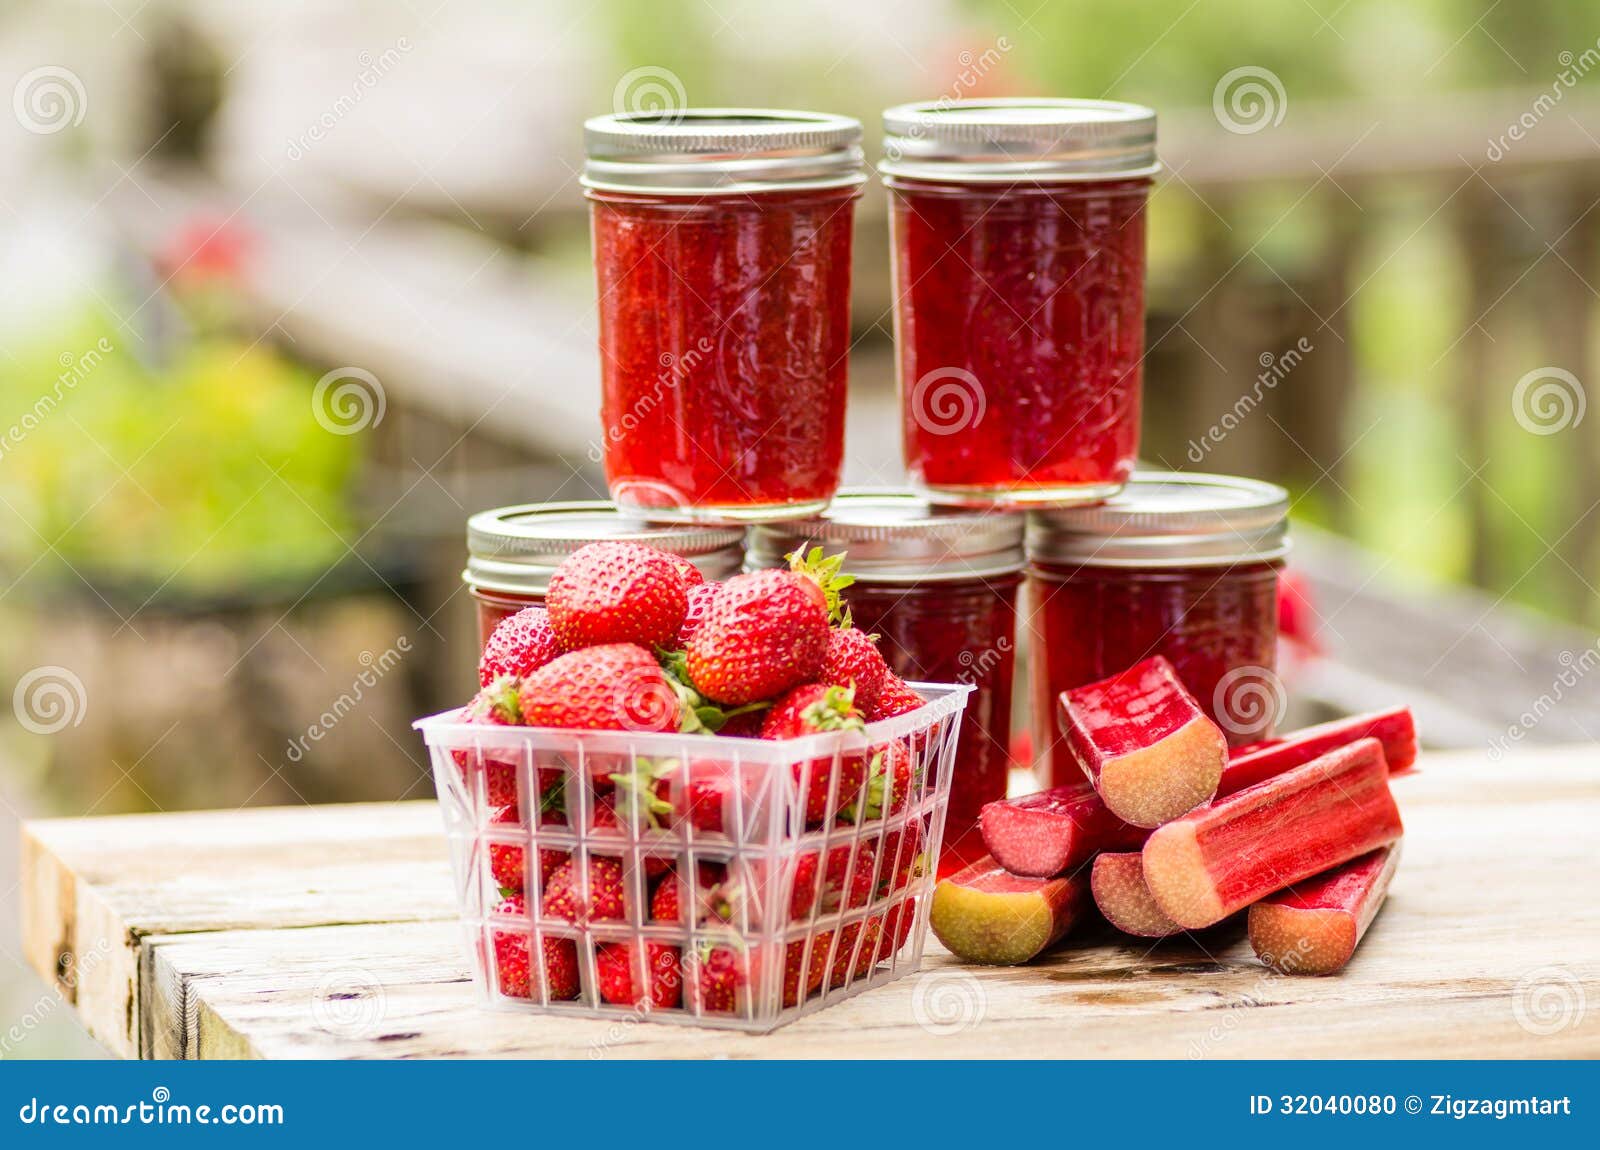 fresh strawberry rhubarb jelly